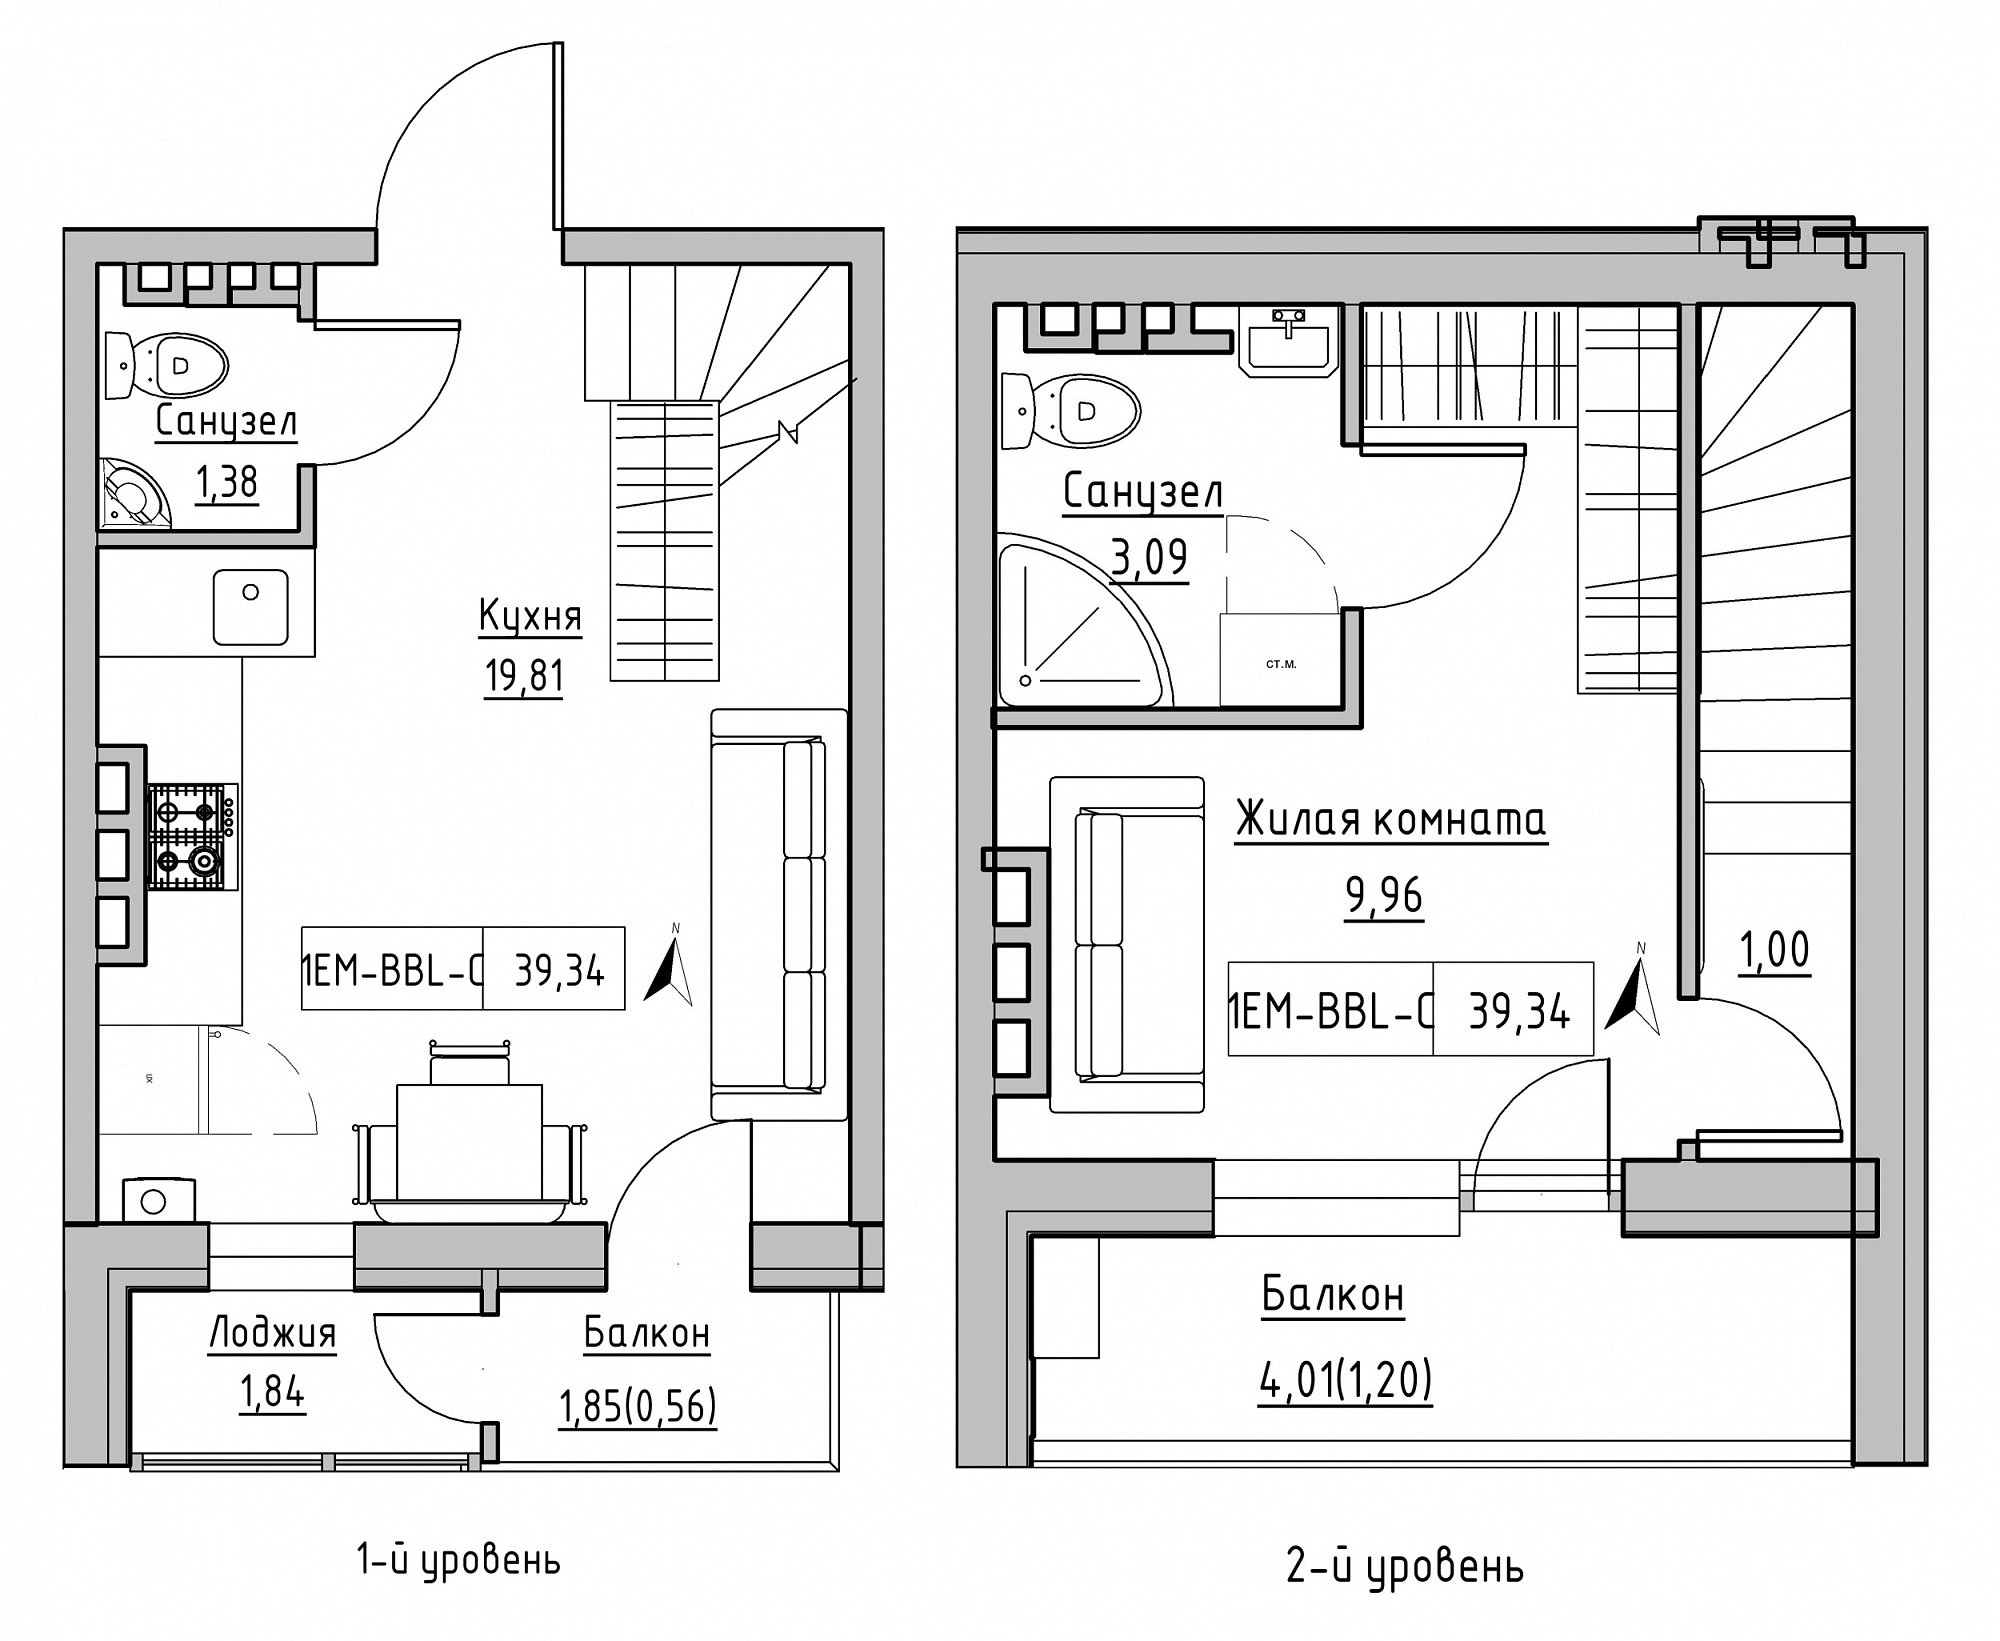 Planning 2-lvl flats area 39.34m2, KS-024-05/0005.